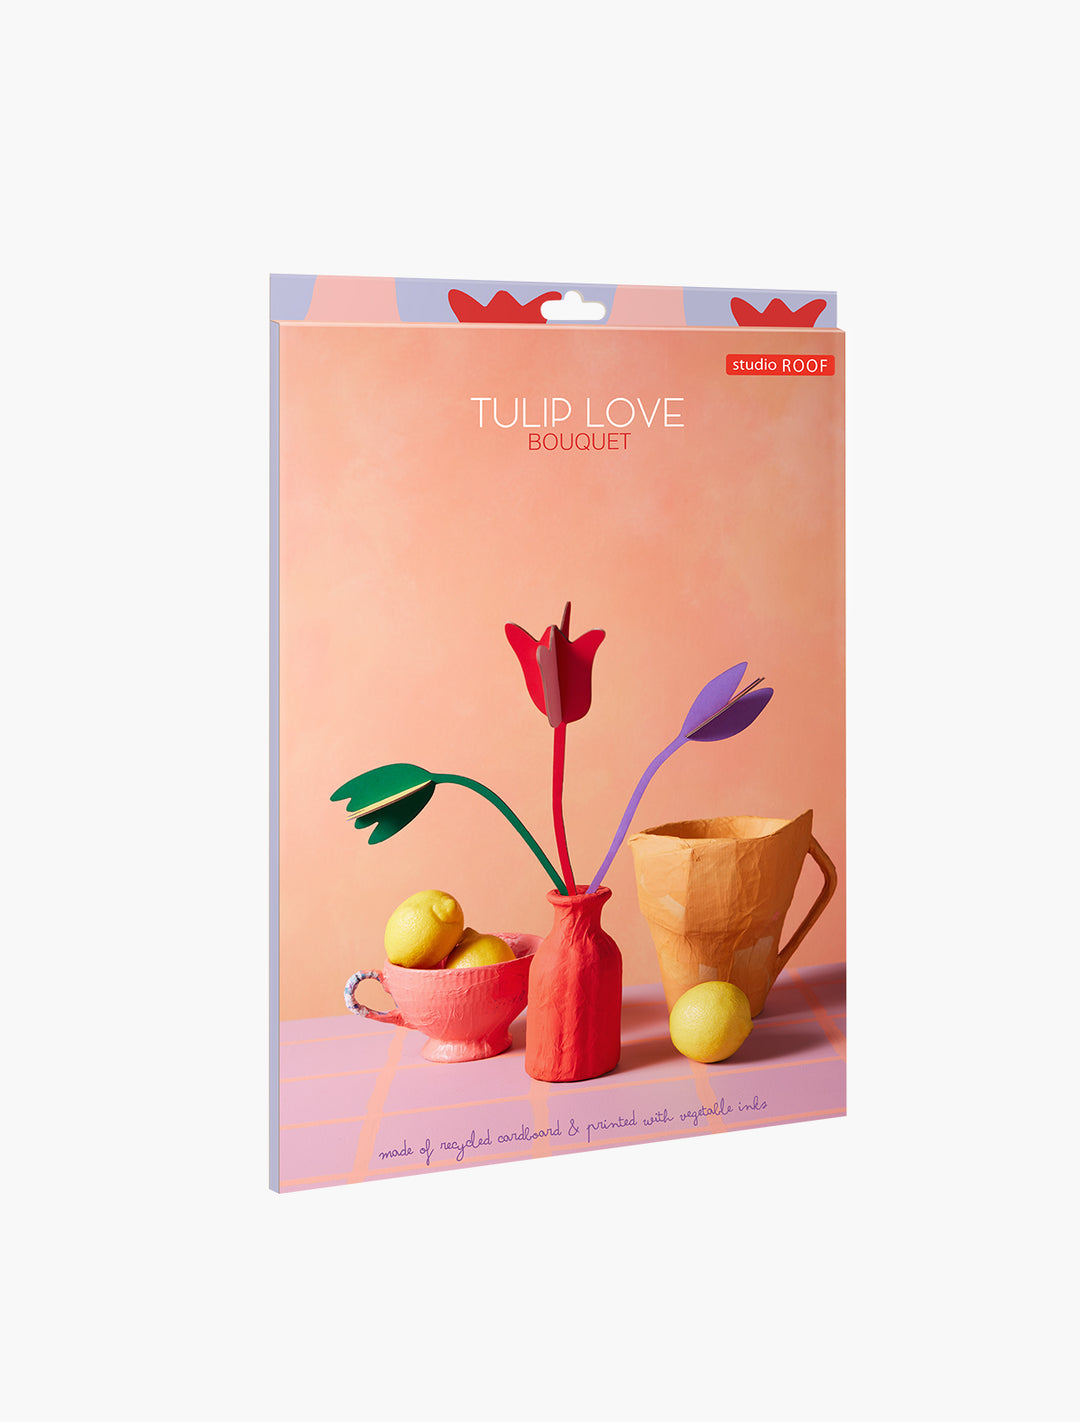 MAQUETA - Studio Roof, Bouquet Tulip Love